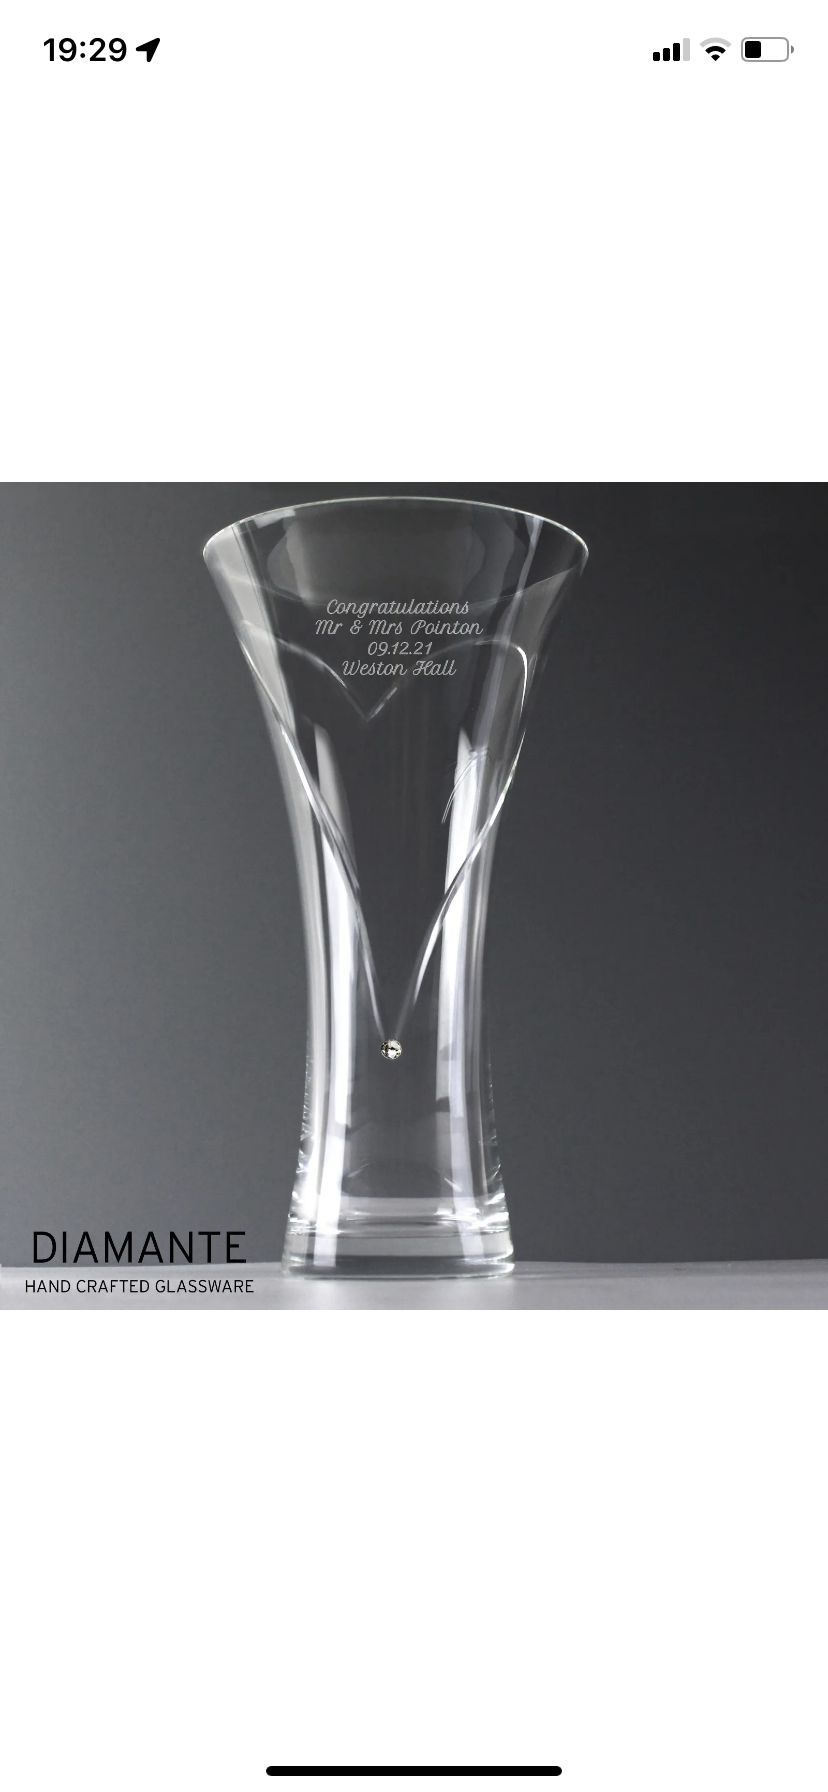 Diamanté Personalised Large Hand Cut Vase - Violet Belle Gifts - Personalised Hand Cut Diamanté Vase